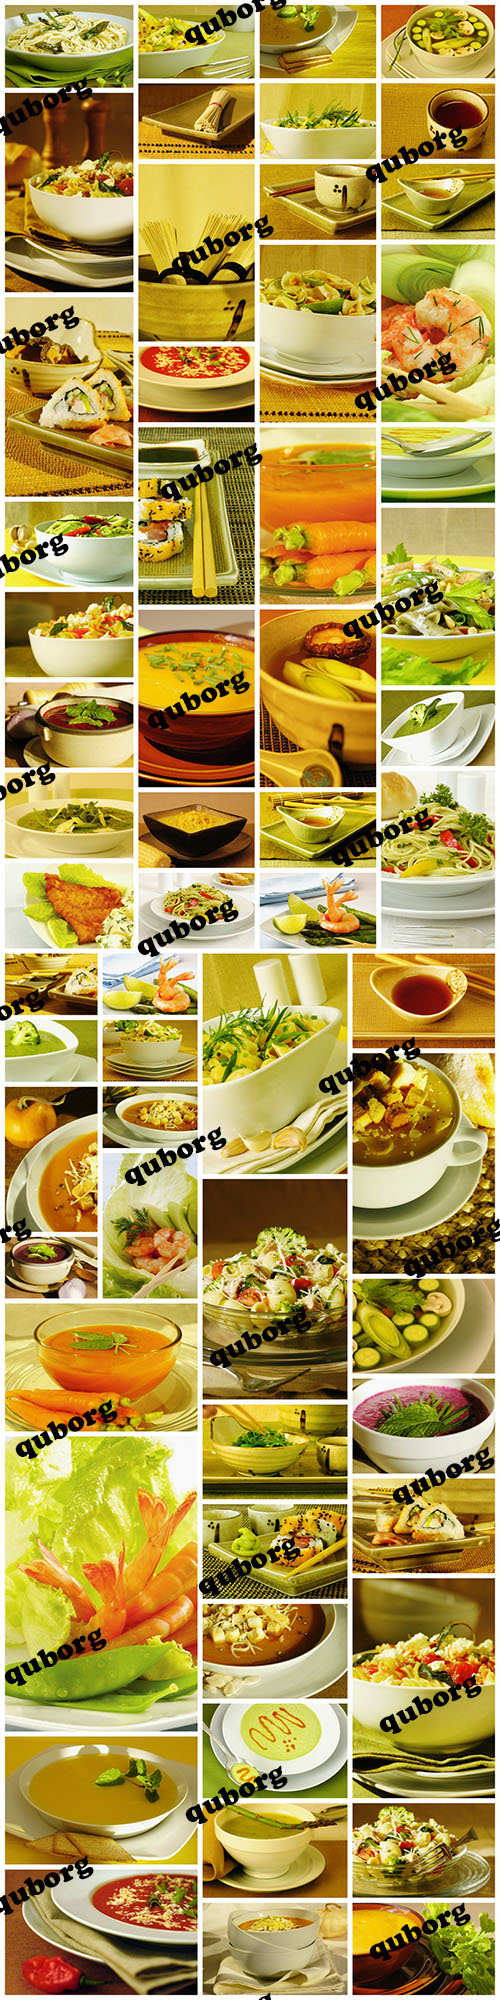 Stock Photos - Gourmet Food